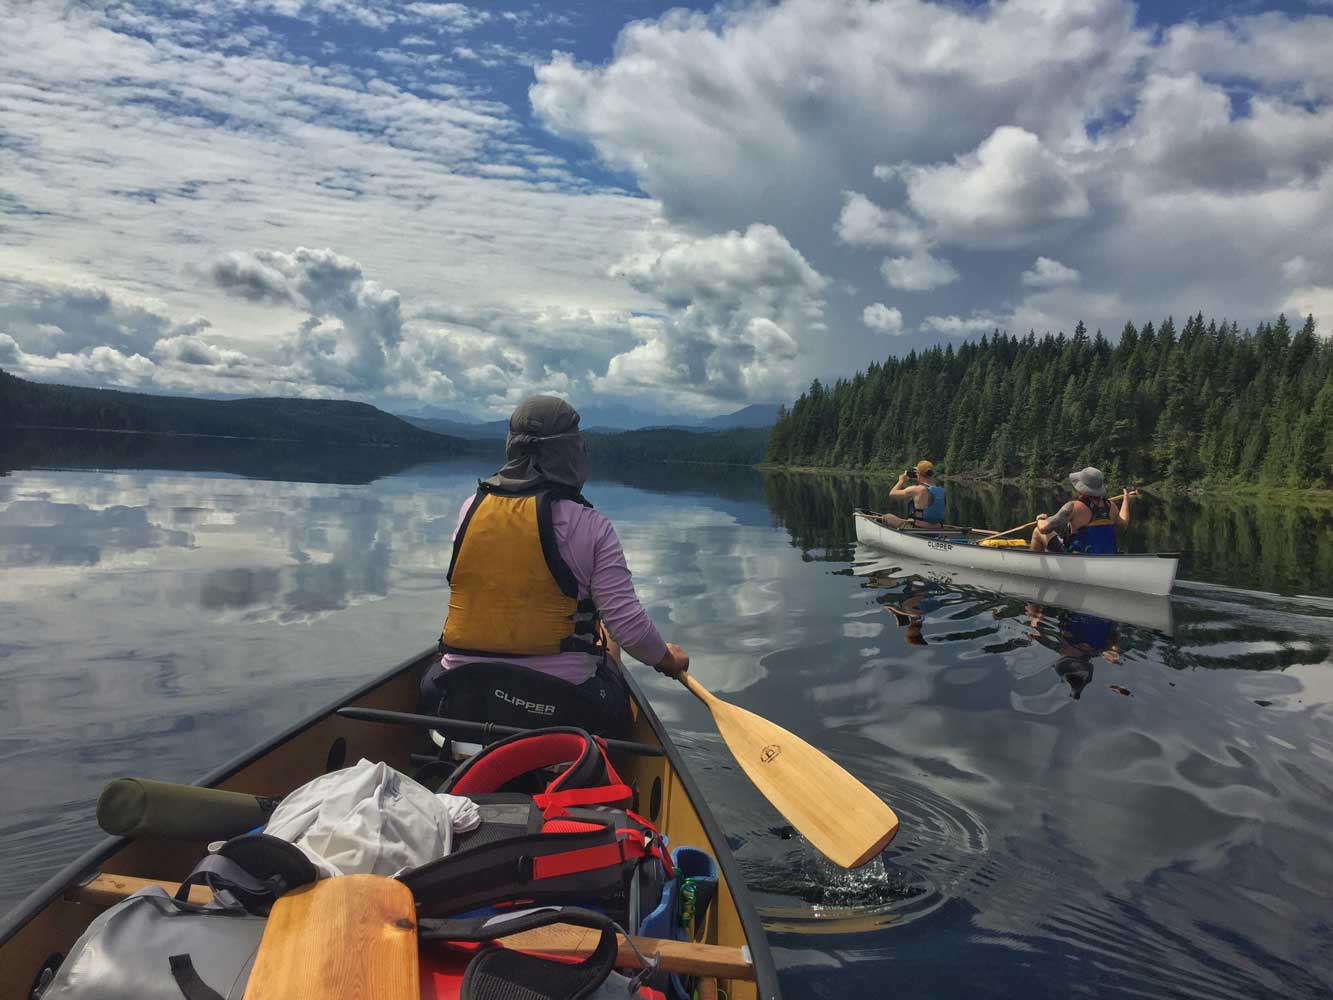 Kolme ihmistä melontaretkellä kahdella kanootilla kuusimetsien reunustamalla tyynellä järvellä kauniina kesäpäivänä.